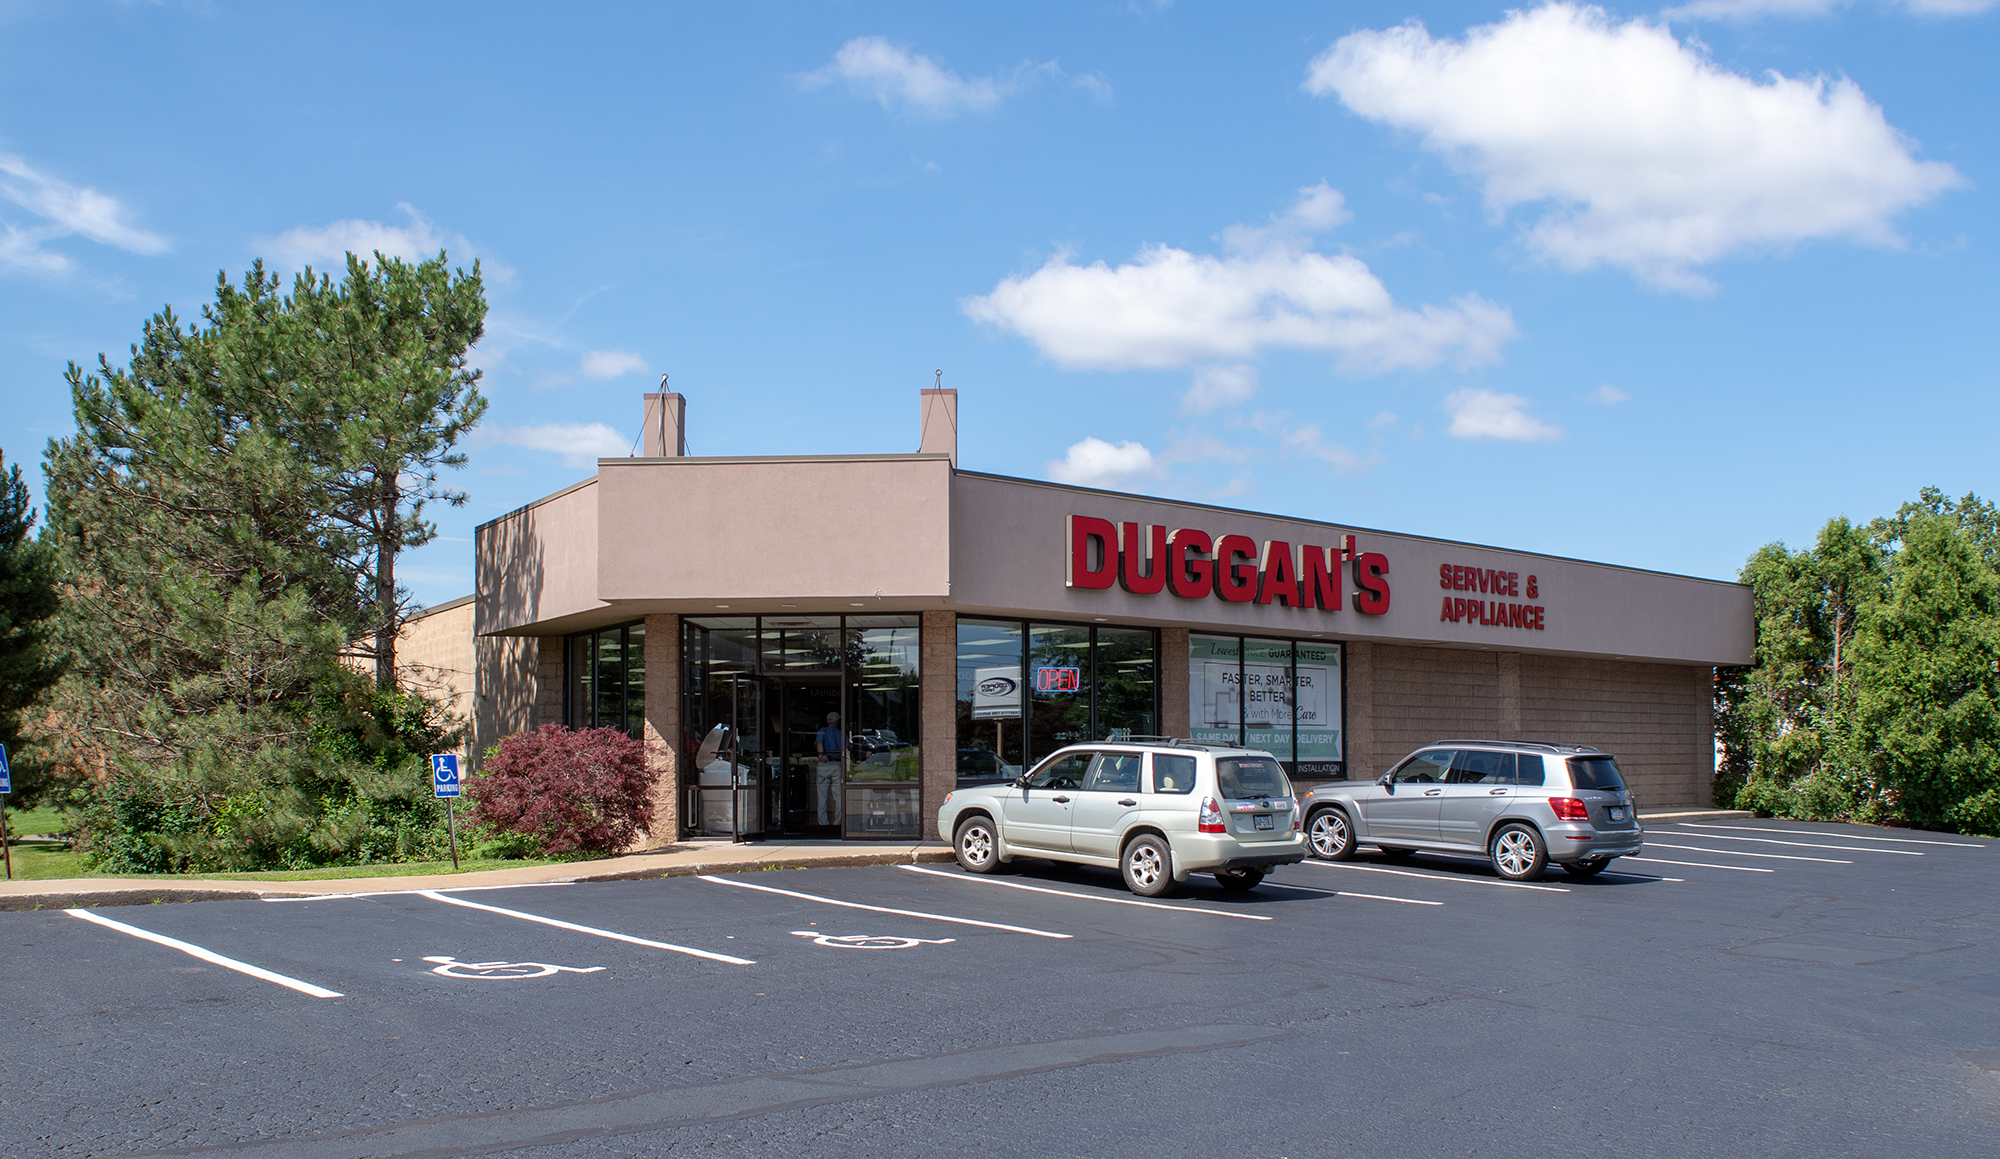 Duggan's Service & Appliance